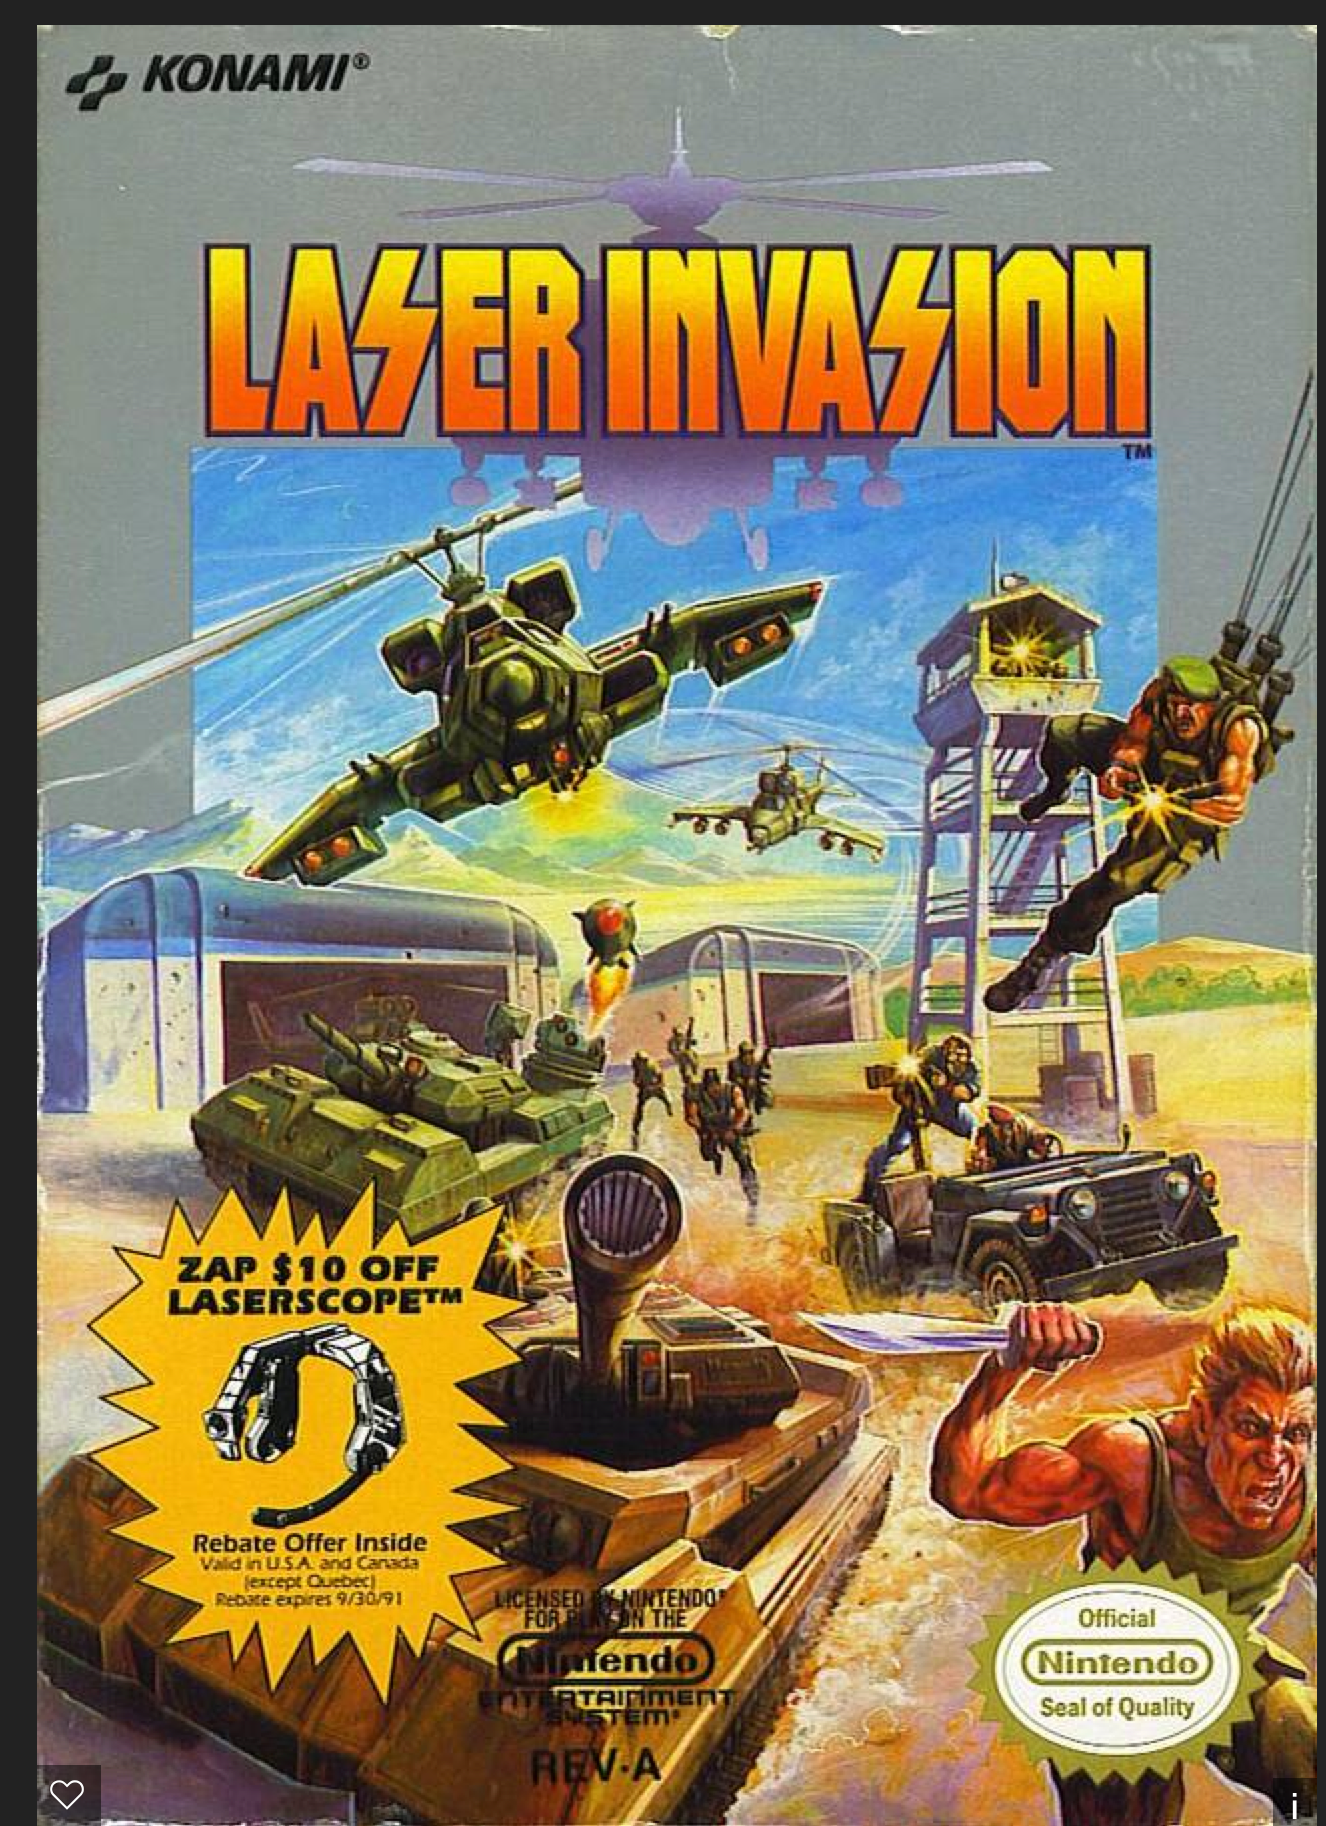 Laser Invasion copy.png